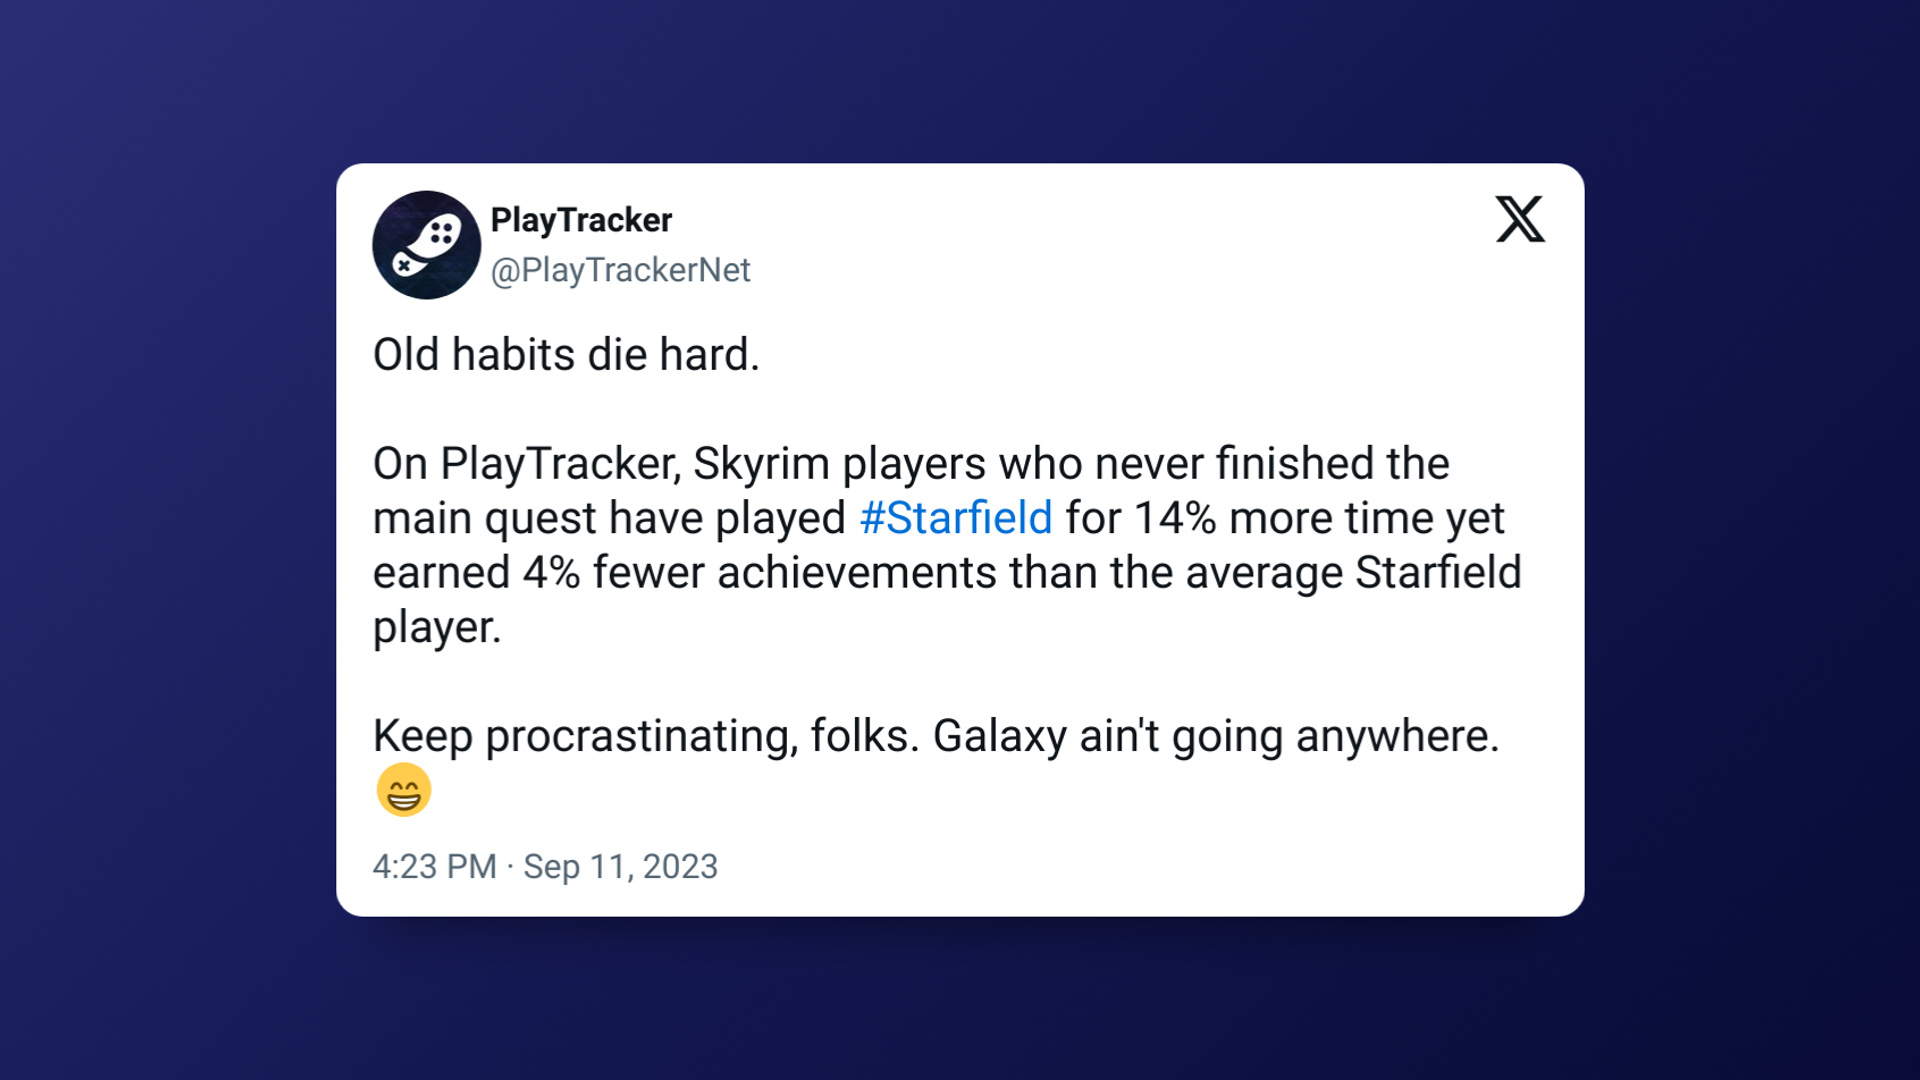 PlayTracker-Beitrag auf Twitter beschreibt, dass ehemalige Skyrim-Spieler auch in Starfield weniger Erfolge erzielen